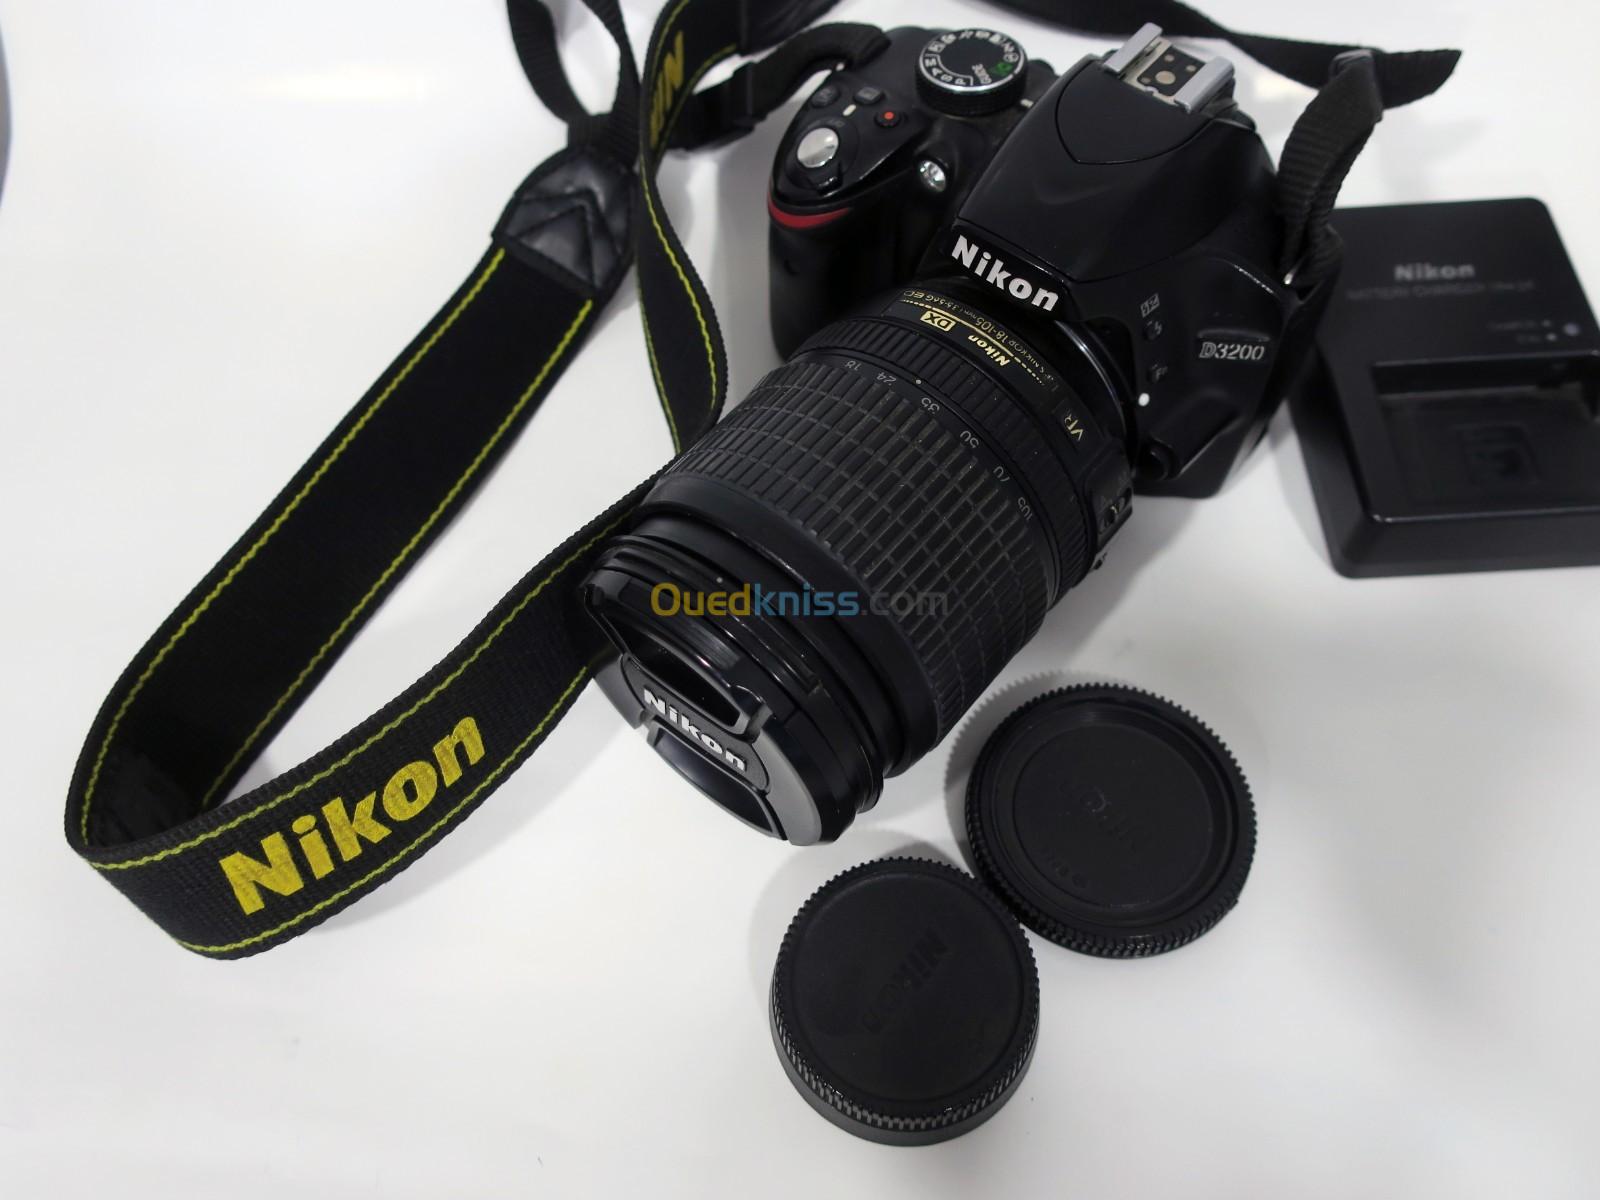 Nikon D-3200